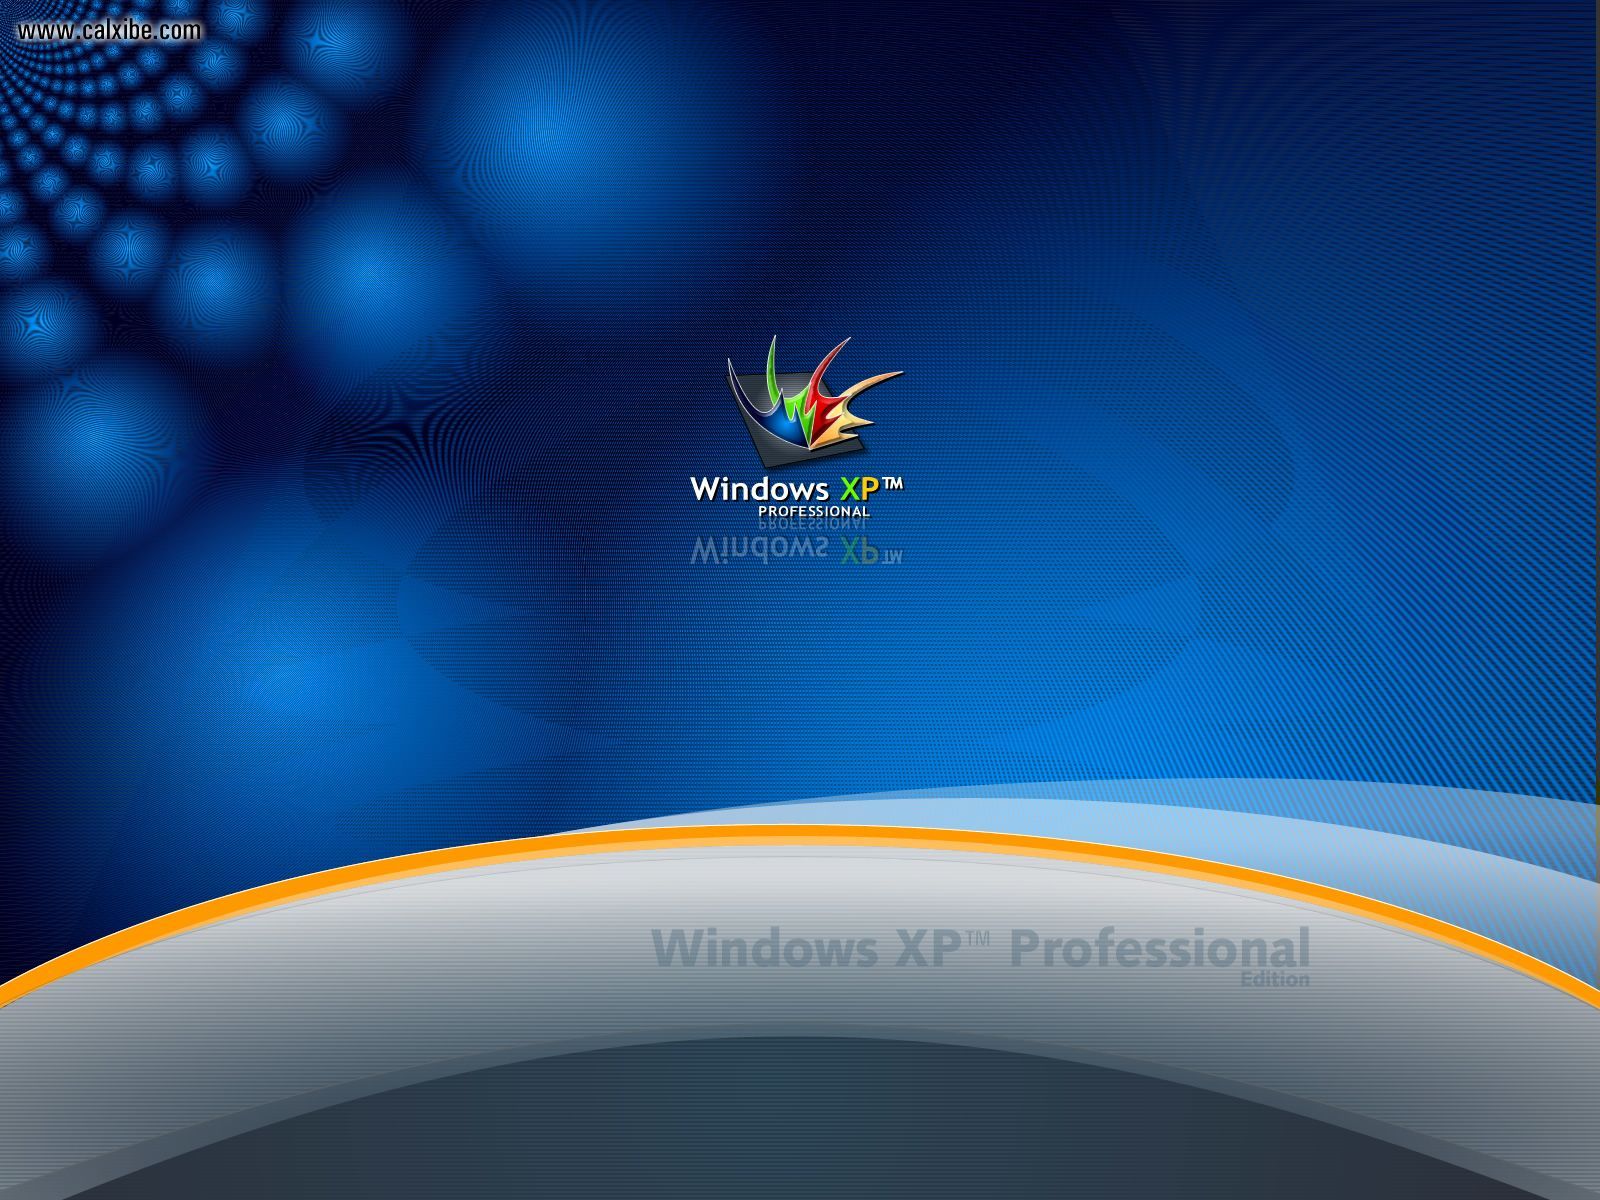 Hình nền Cartoony Windows XP Bliss là một lựa chọn tuyệt vời cho những ai muốn có một hình nền đơn giản giống như của Windows XP nhưng lại có nhiều màu sắc và đầy phong cách. Với hiệu ứng 3D tinh tế và chuyên nghiệp, hình nền sẽ khiến cho màn hình của bạn trở nên thật sinh động và bắt mắt.